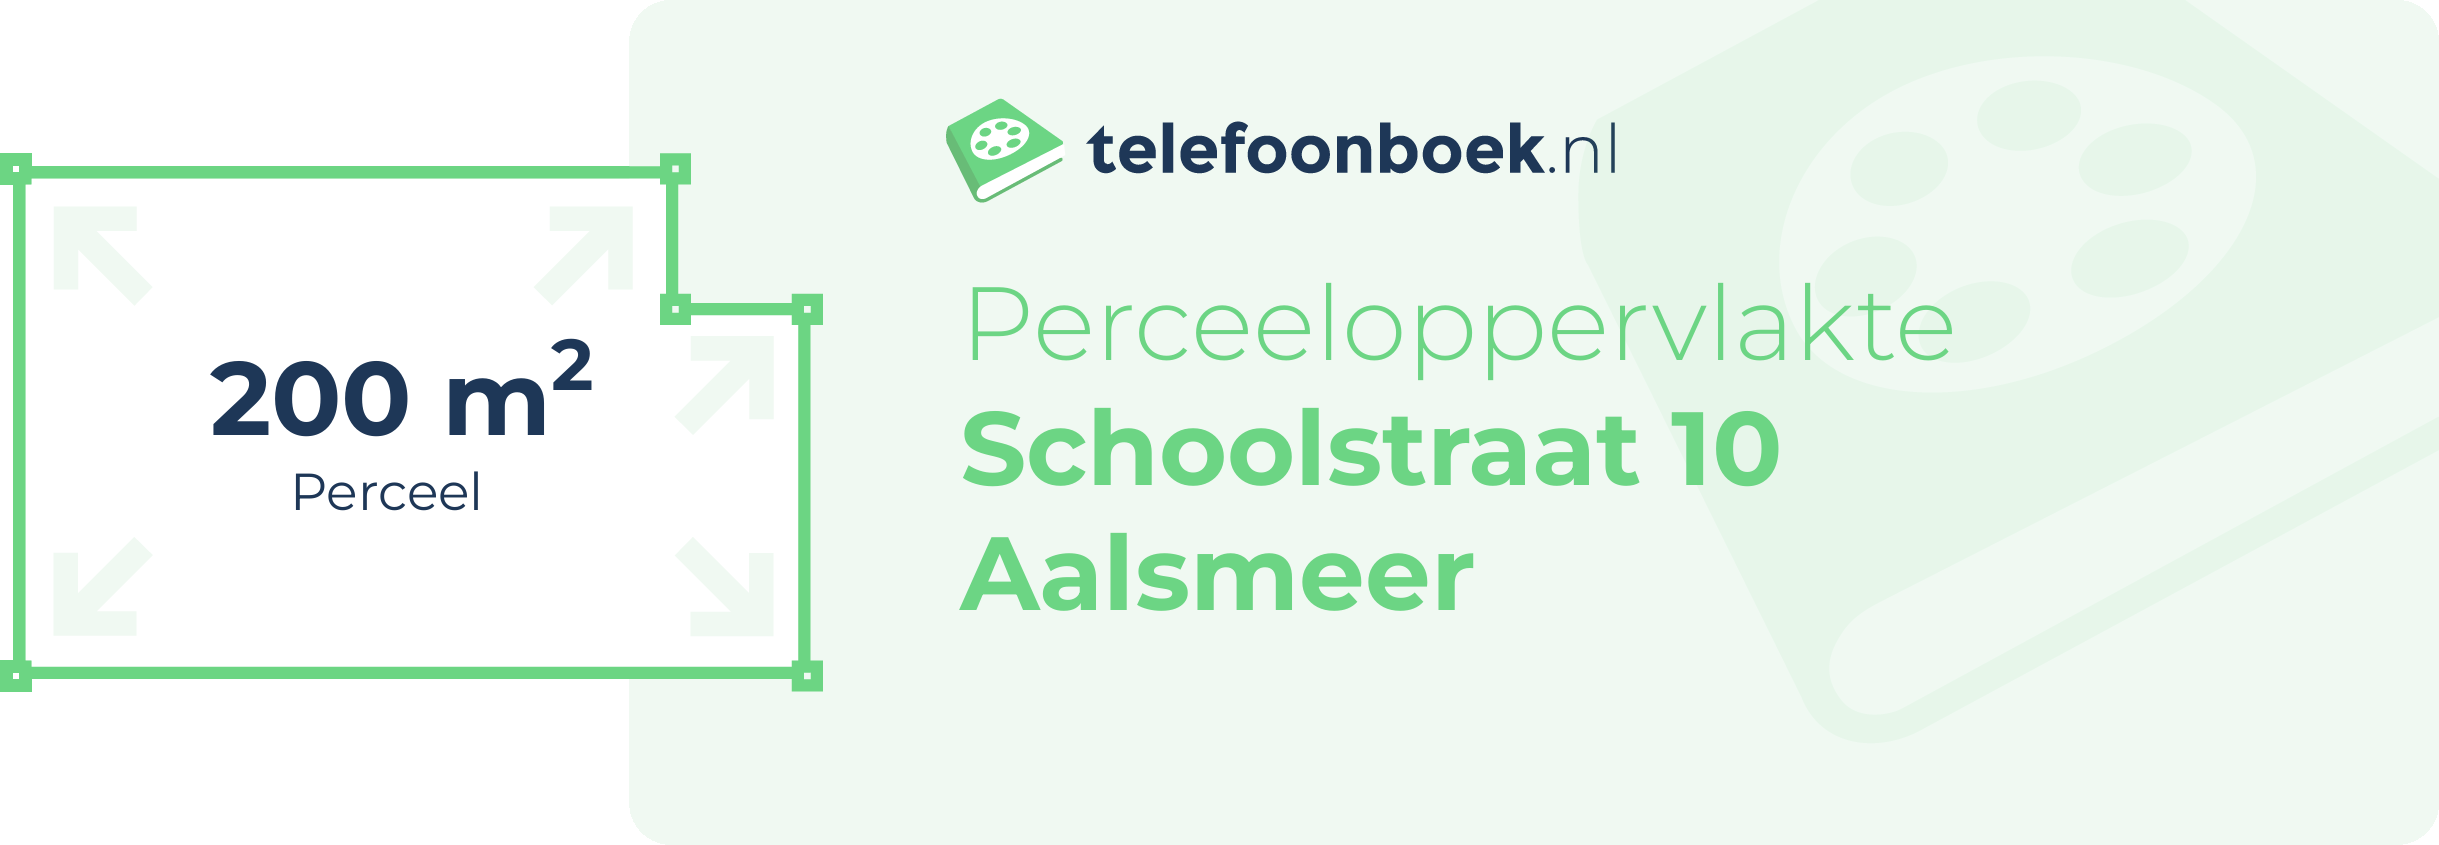 Perceeloppervlakte Schoolstraat 10 Aalsmeer